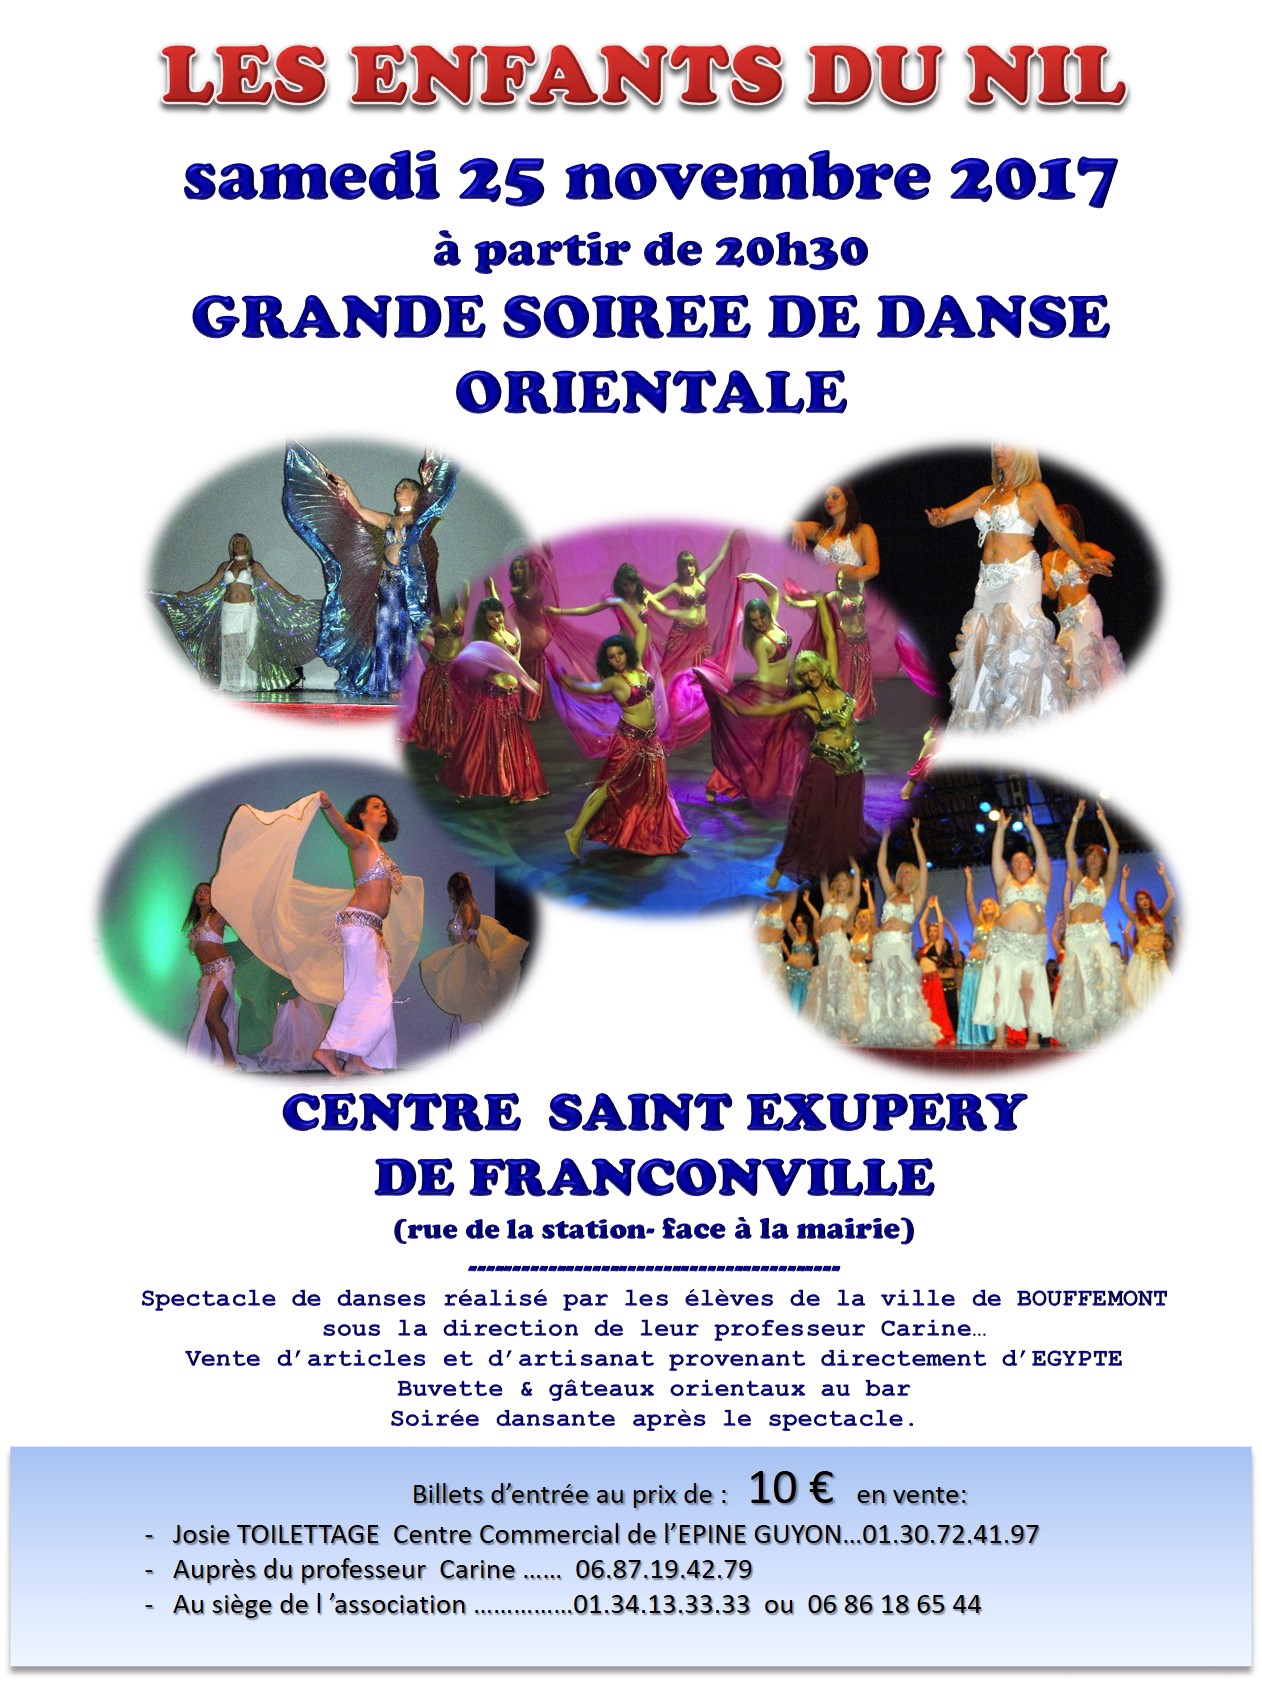 Grande soirée de danse orientale à Franconville